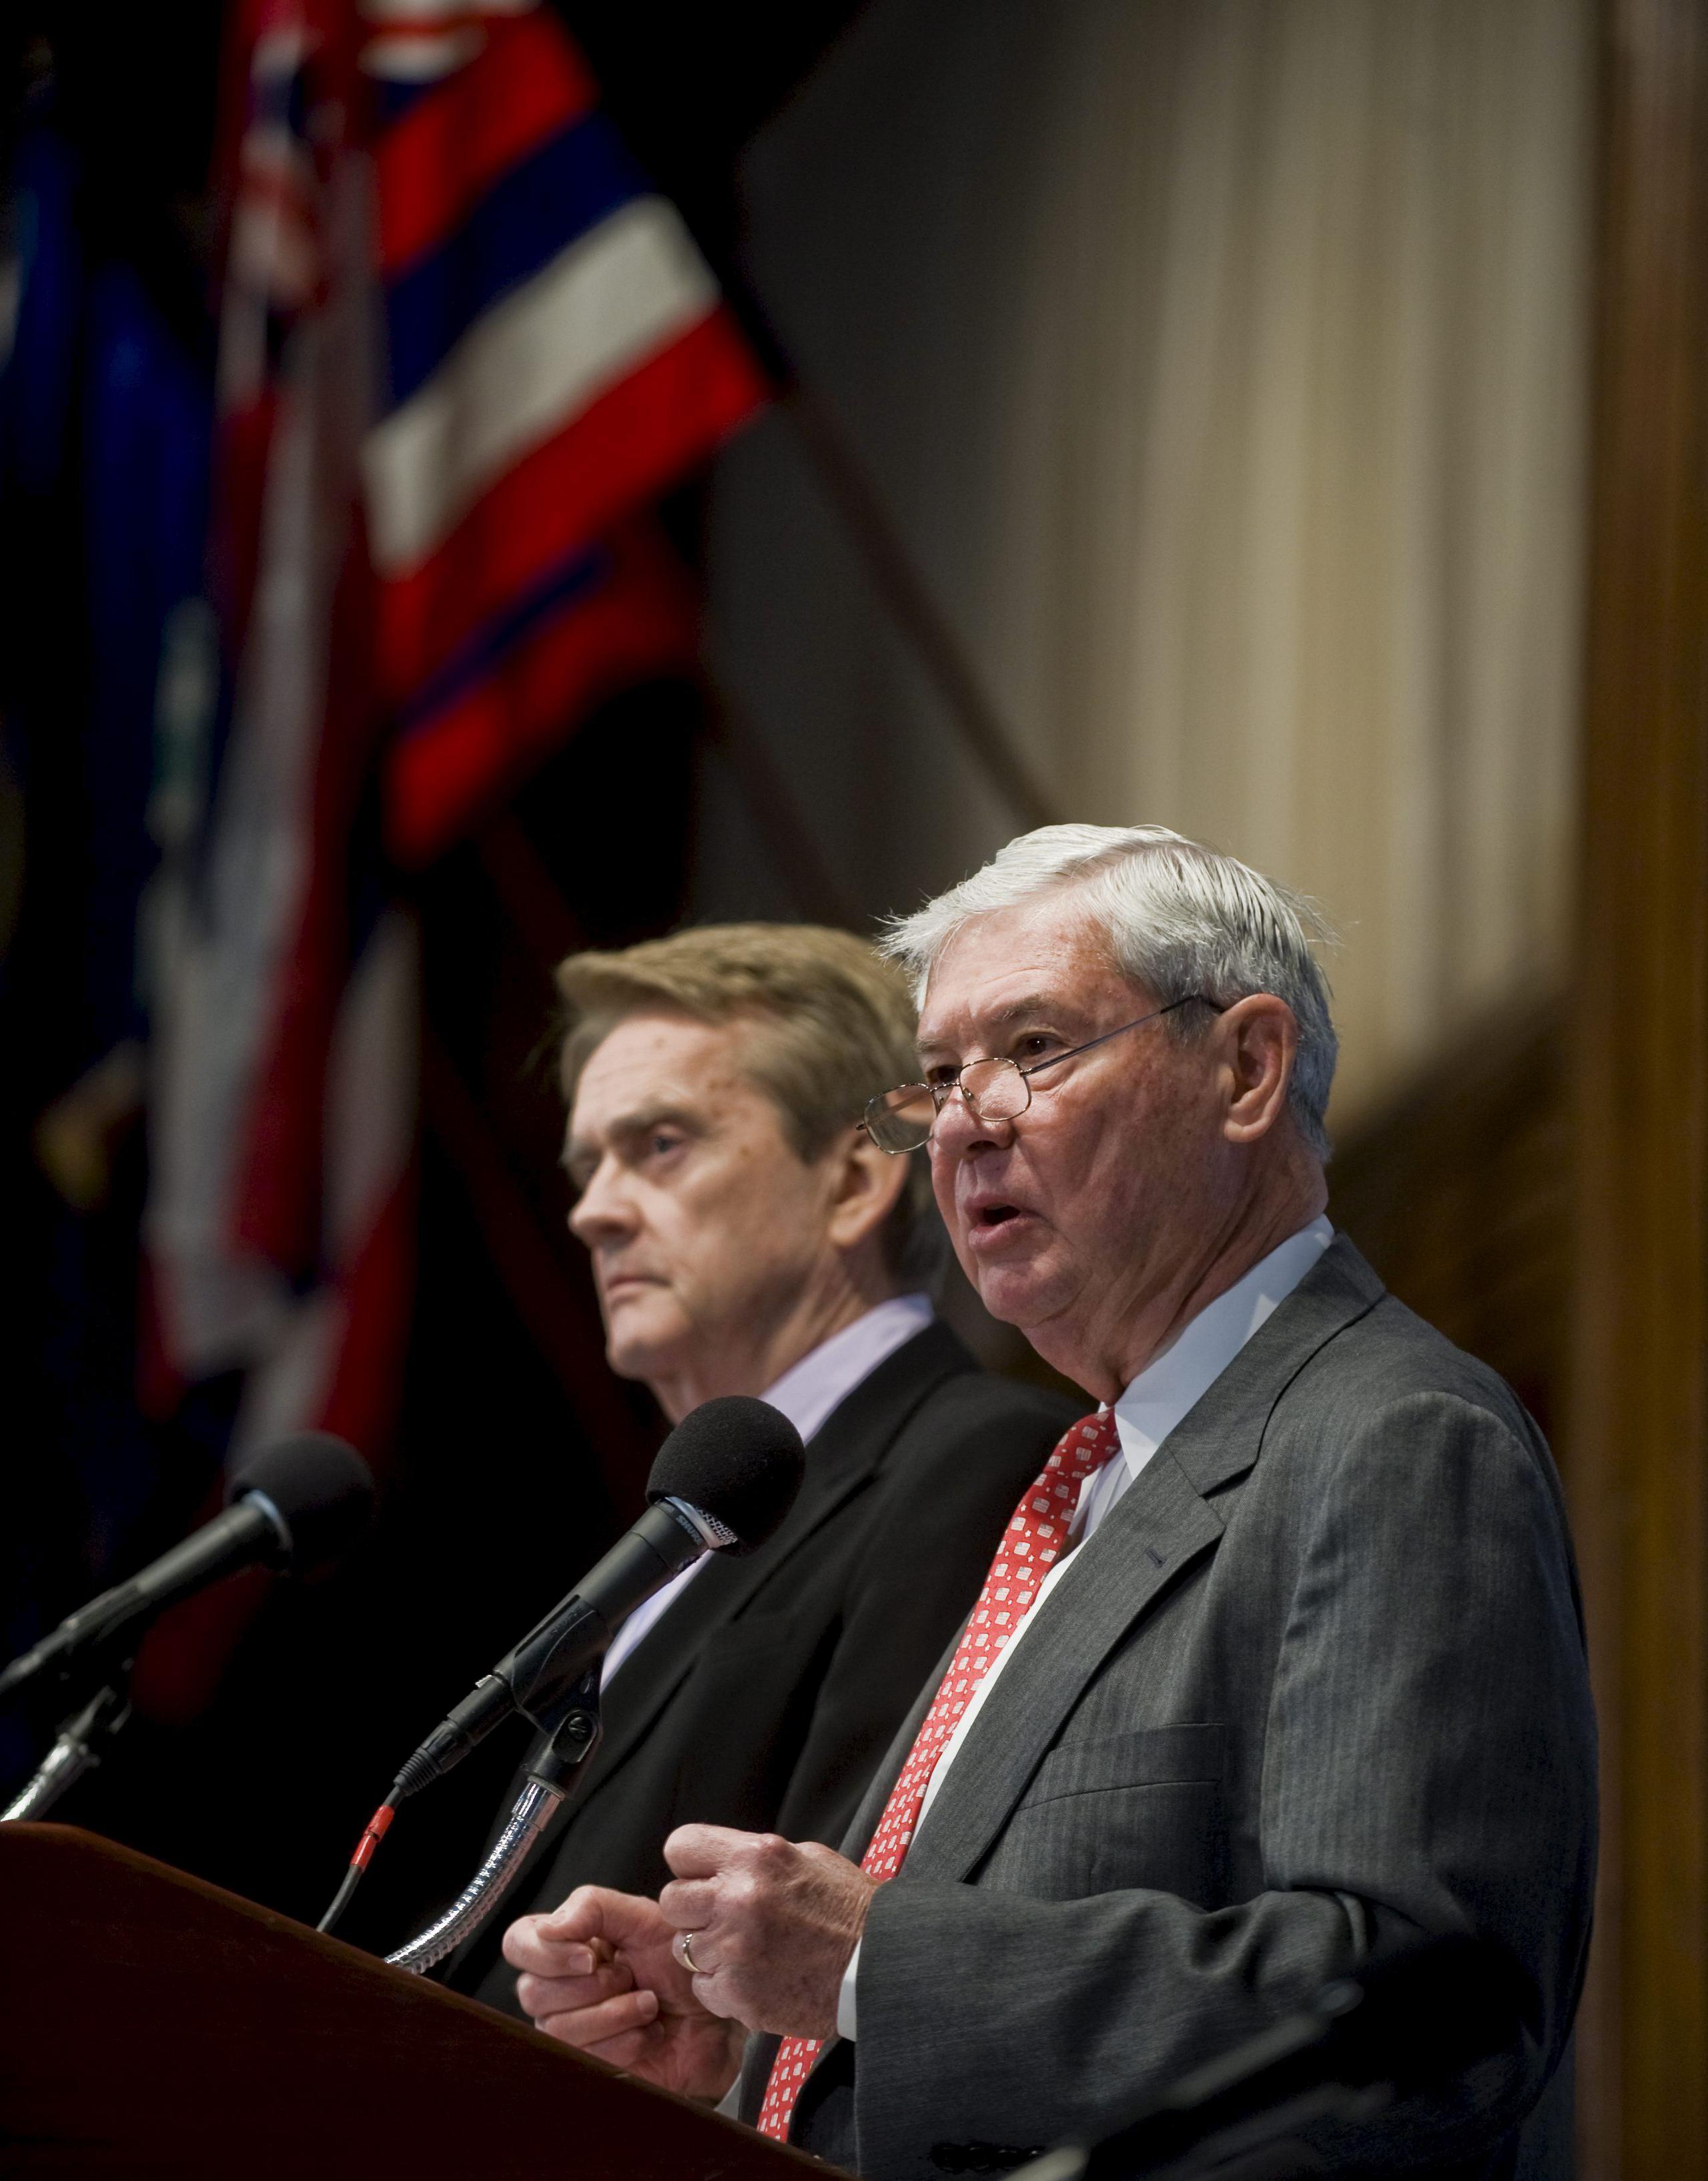 Graham presidió el Comité de Inteligencia del Senado que investigó los ataques terroristas de septiembre de 2001.